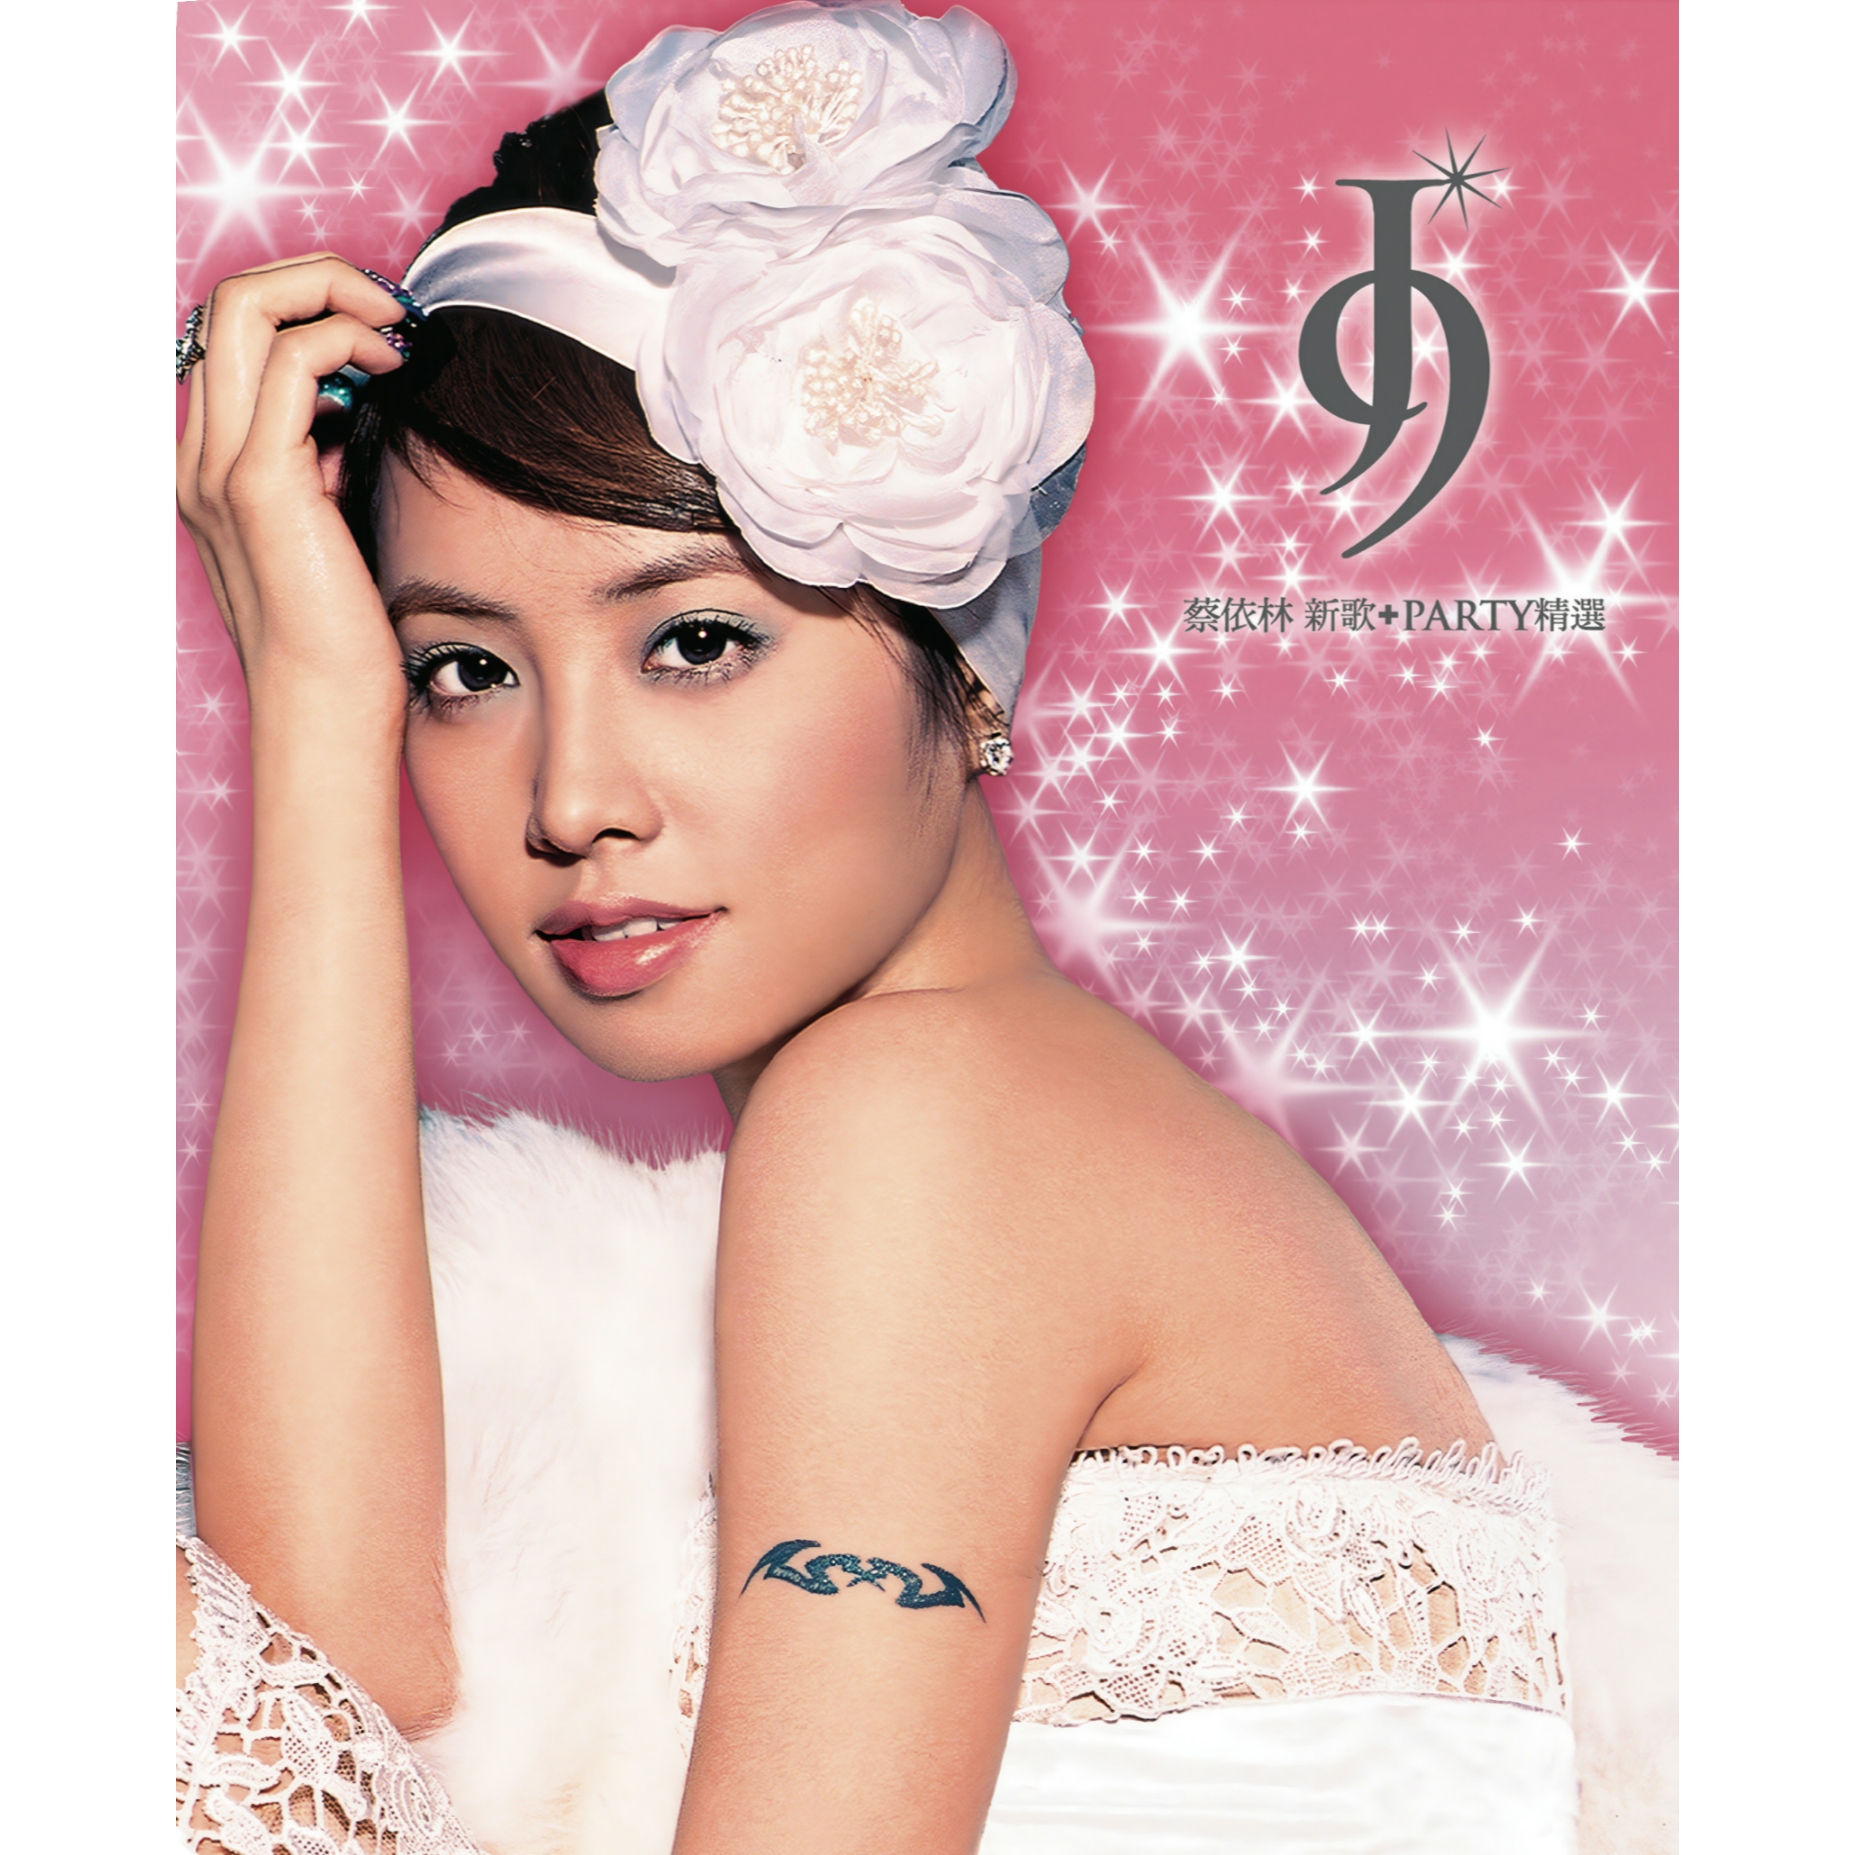 Jolin Tsai J9 Party Collection cover artwork